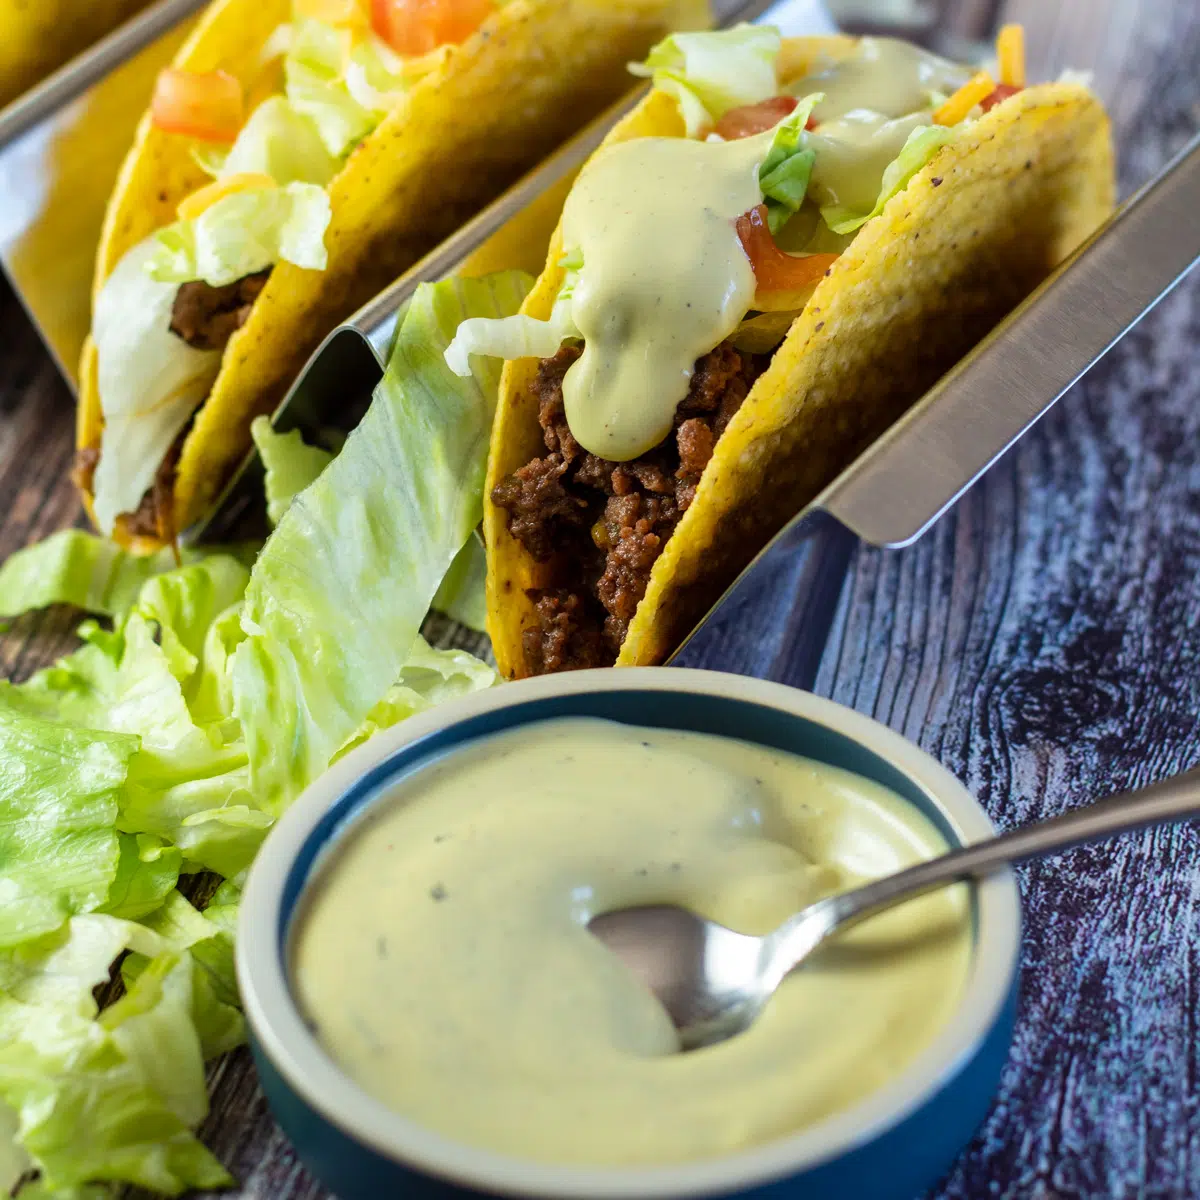 Gambar persegi saus peternakan alpukat Taco Bell dengan taco.